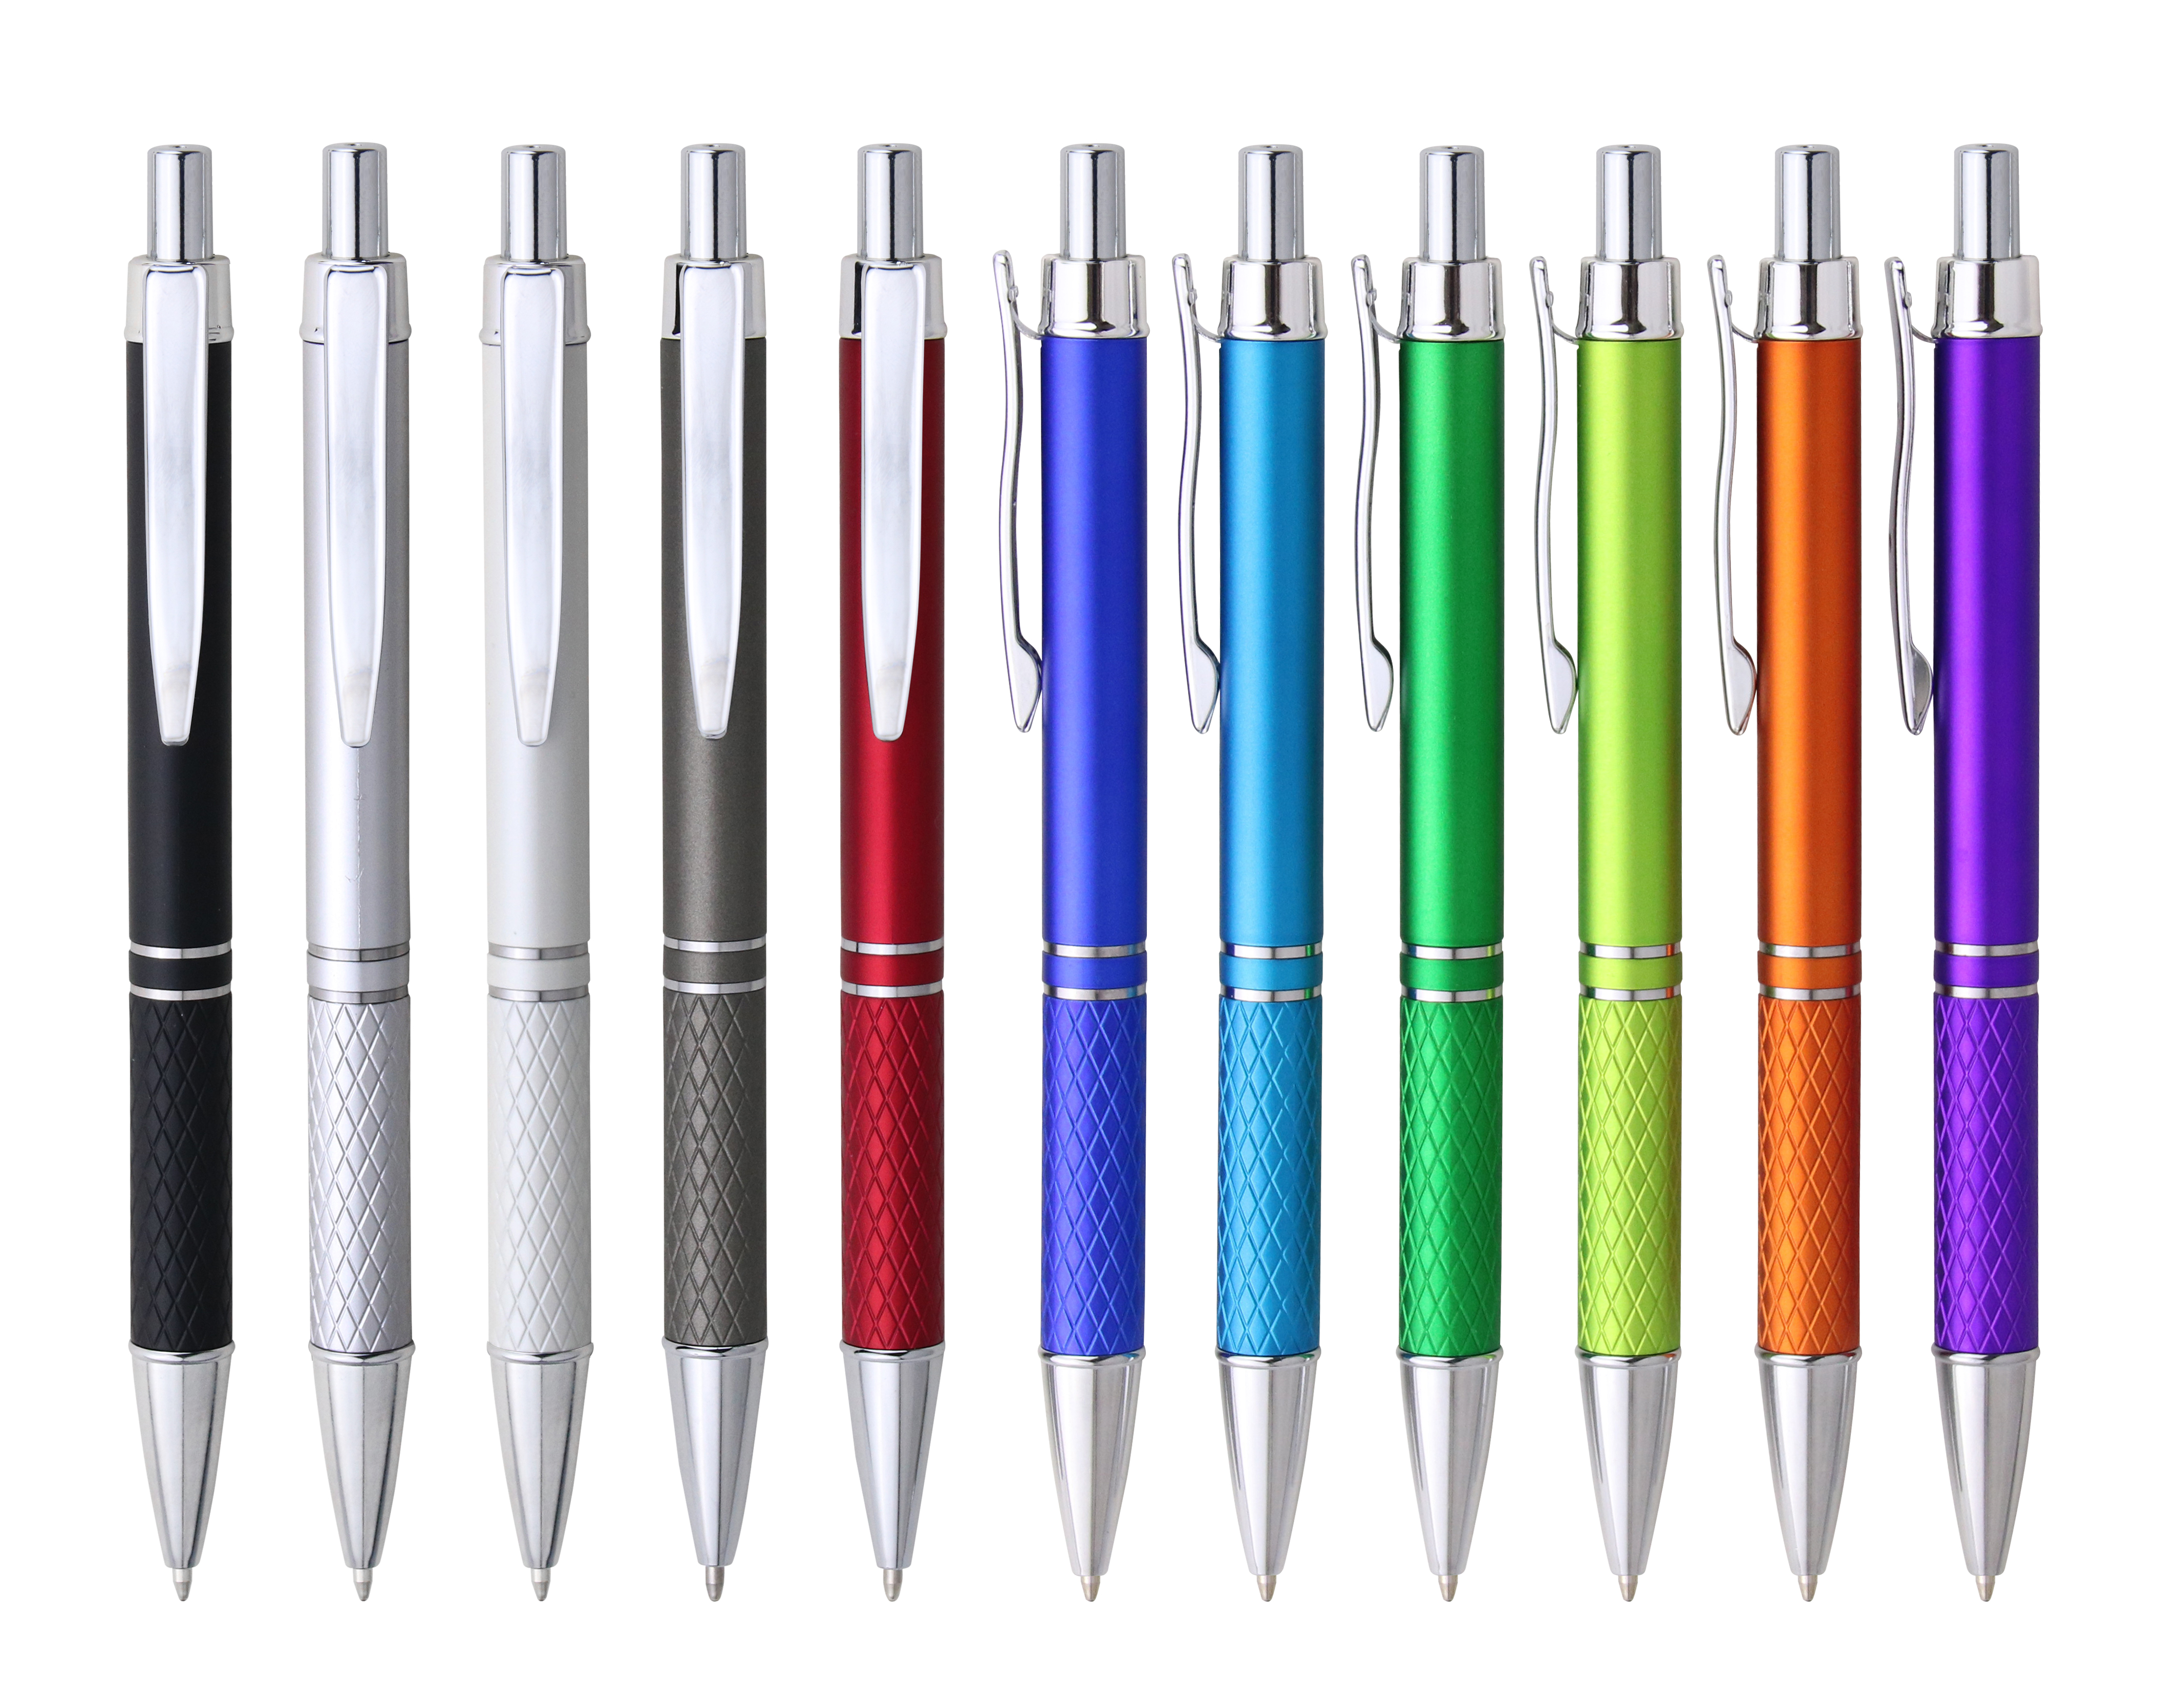 PP86215B plastic ballpoint pen 